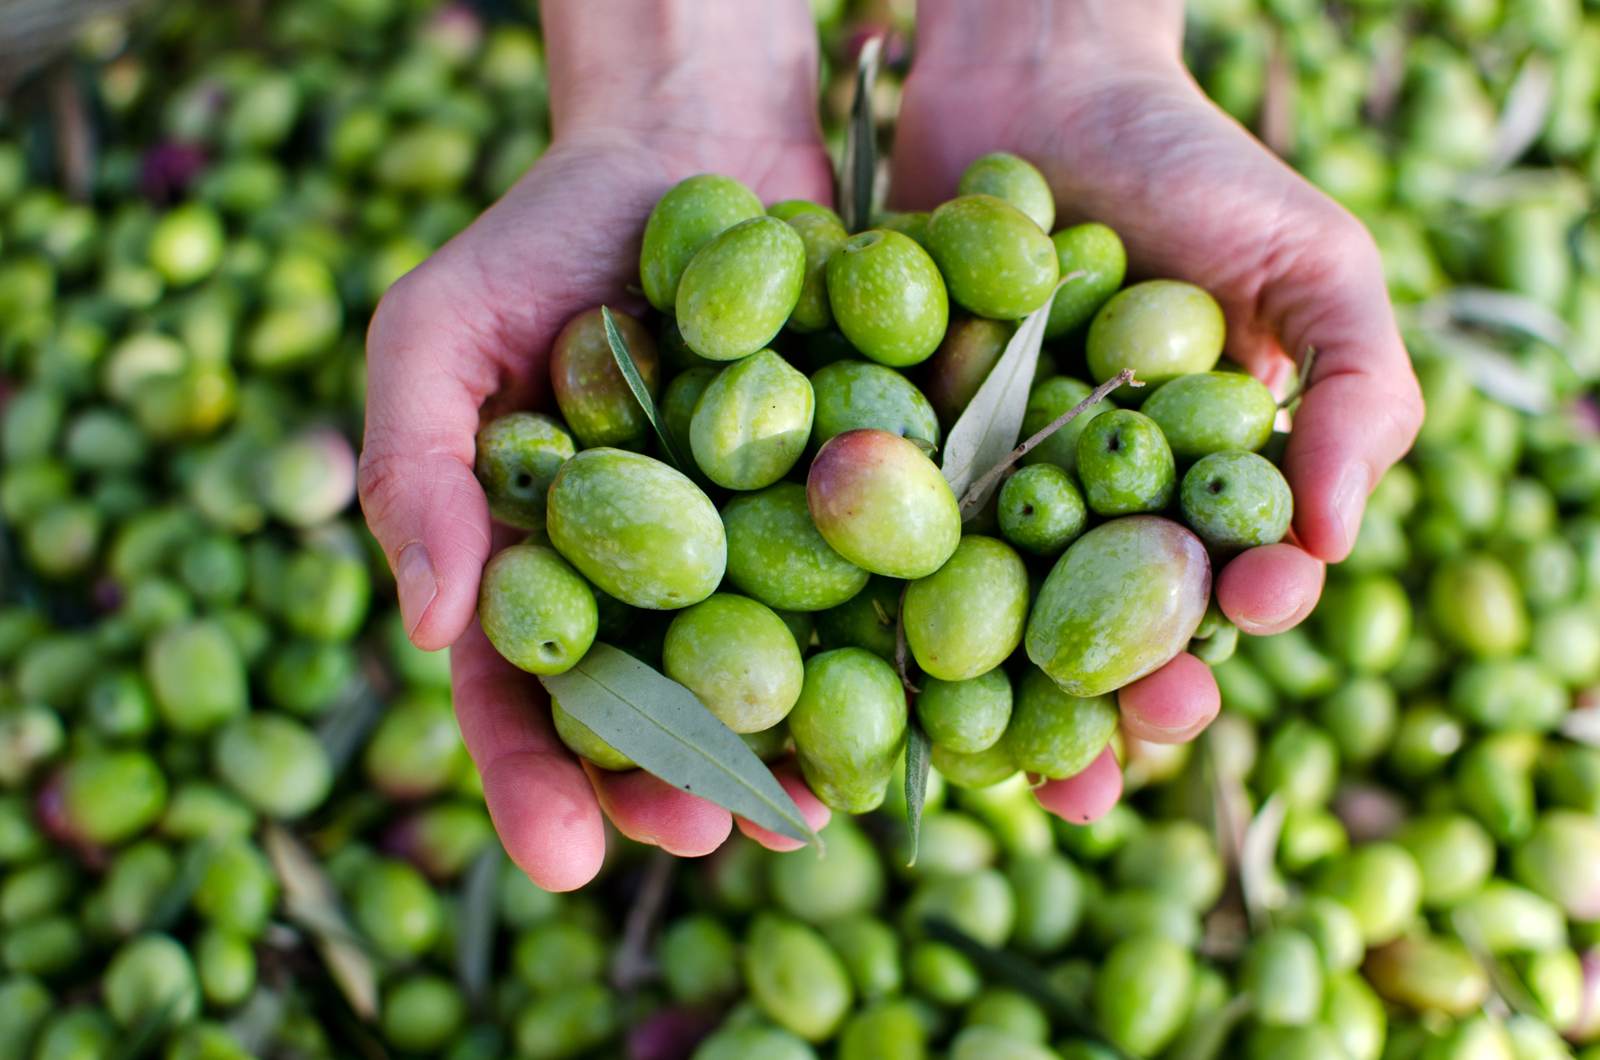 raccolta delle olive marchigiane